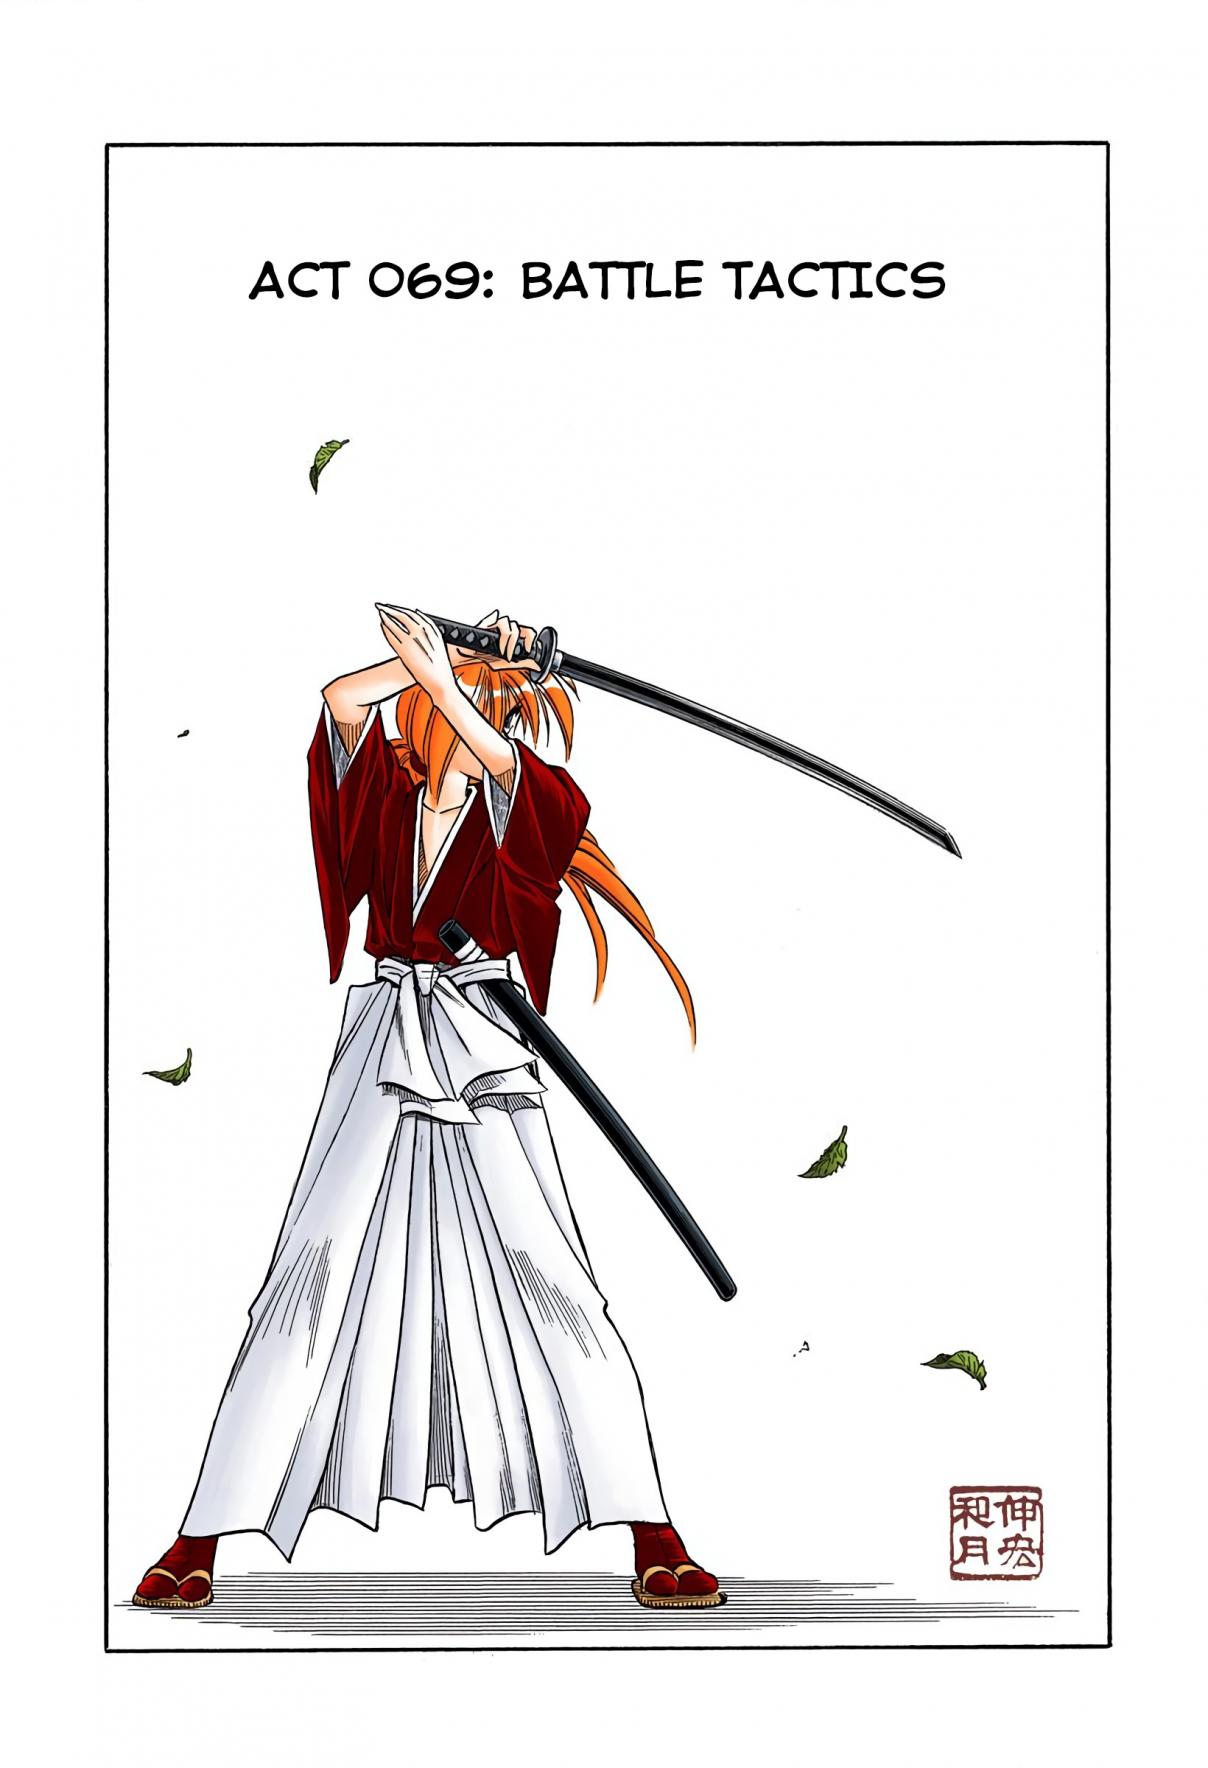 Rurouni Kenshin Digital Colored Comics Vol. 9 Ch. 69 Battle Tactics